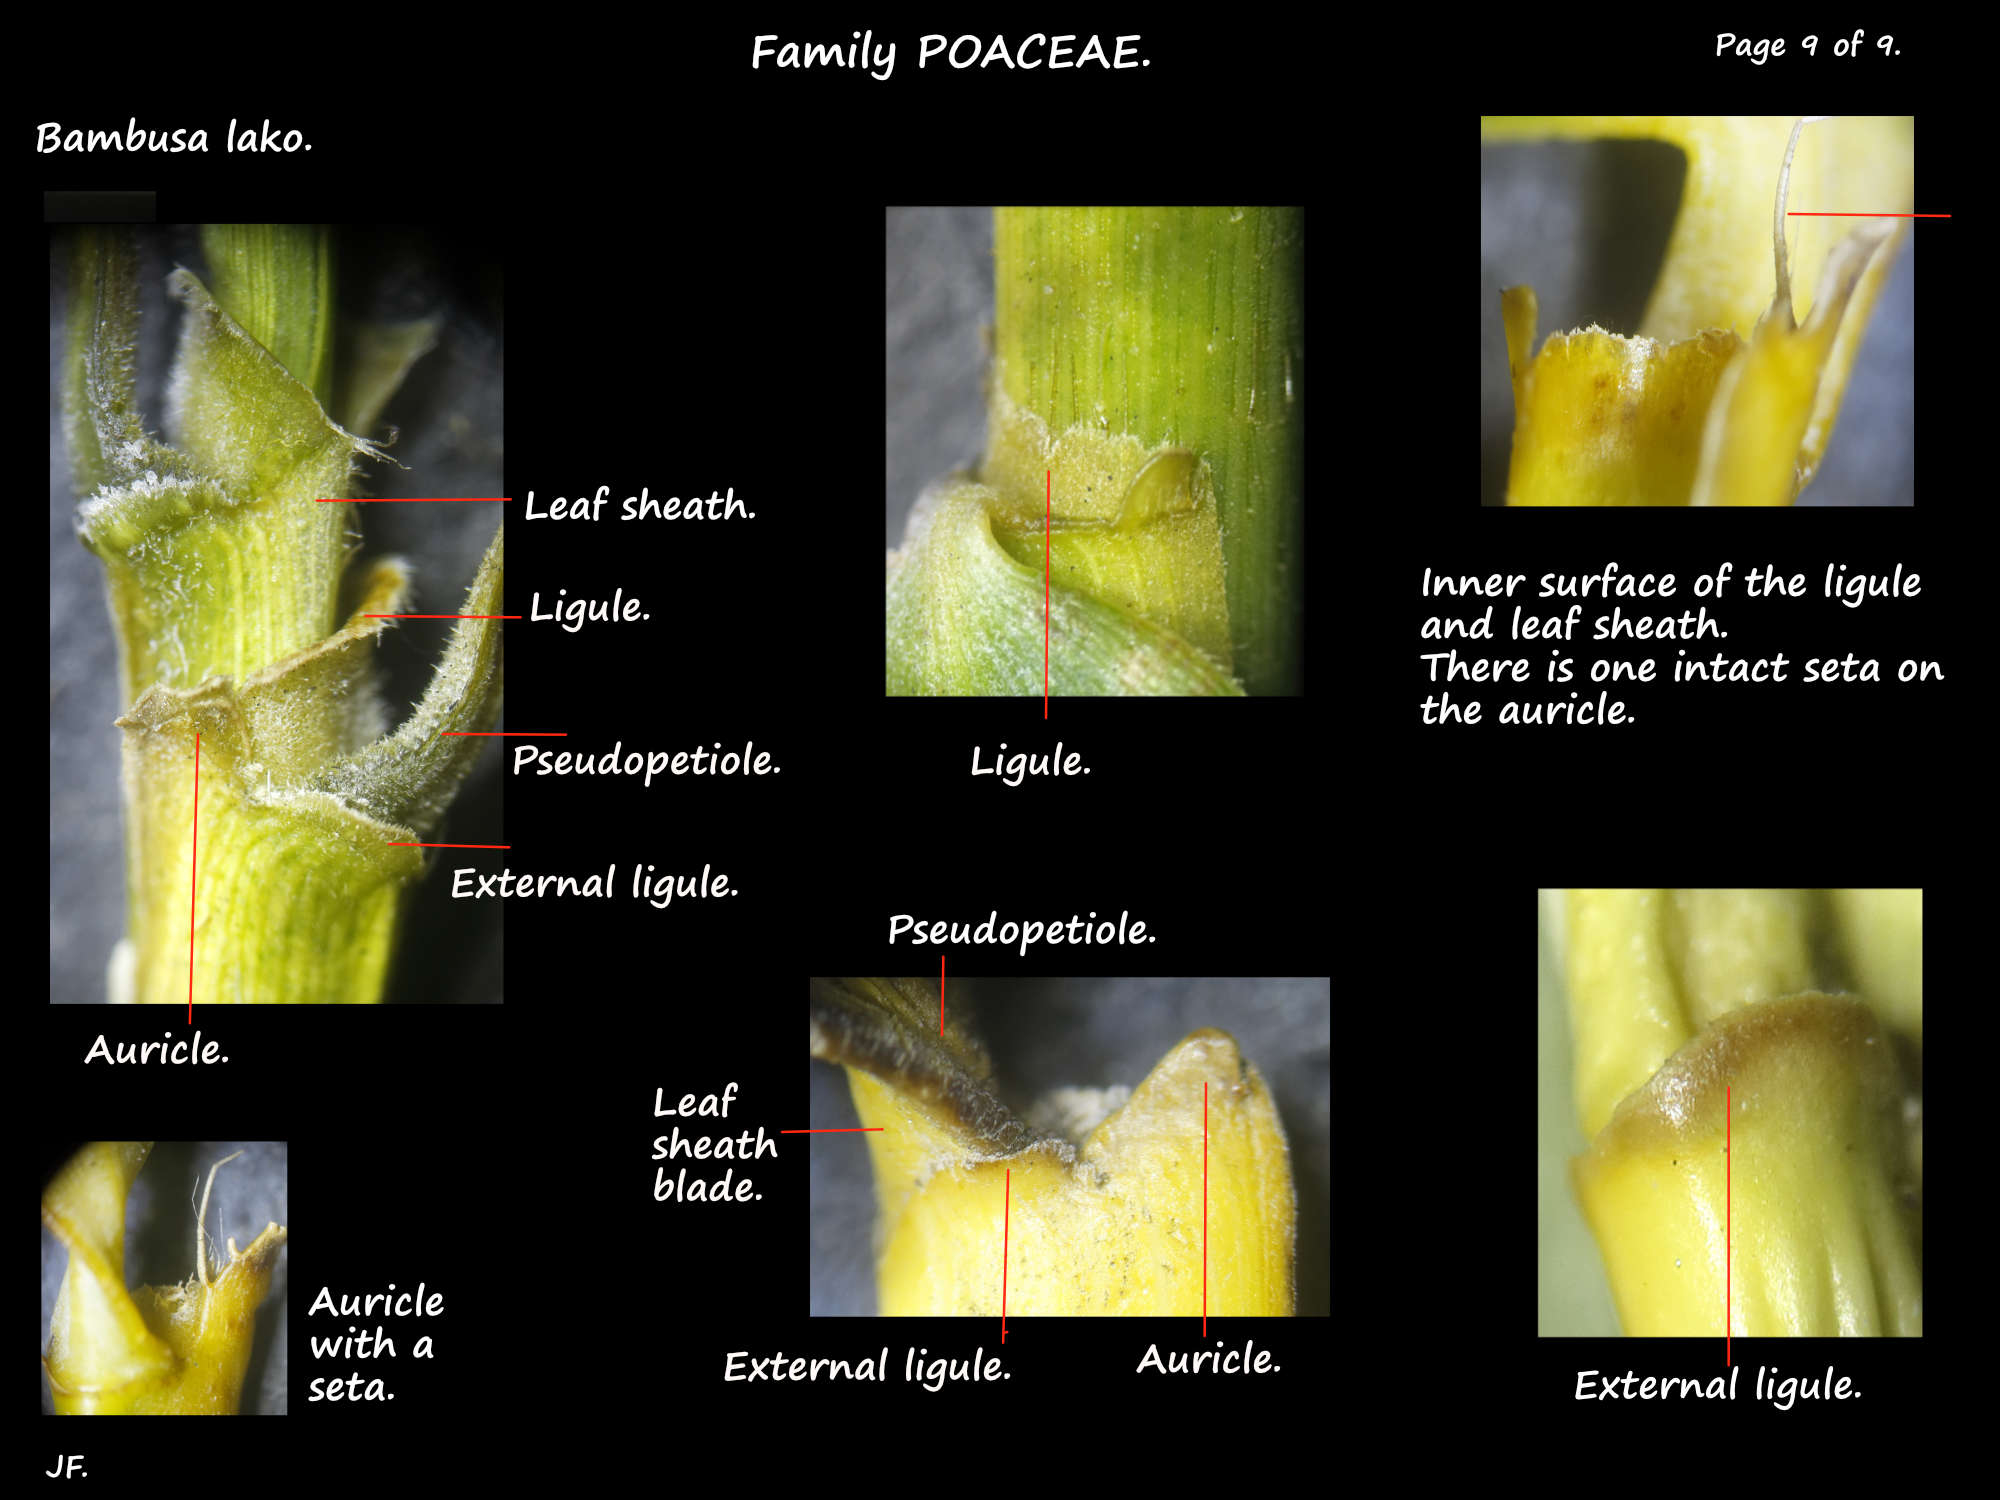 9 Bambusa lako leaf sheath ligule, auricle & external ligule